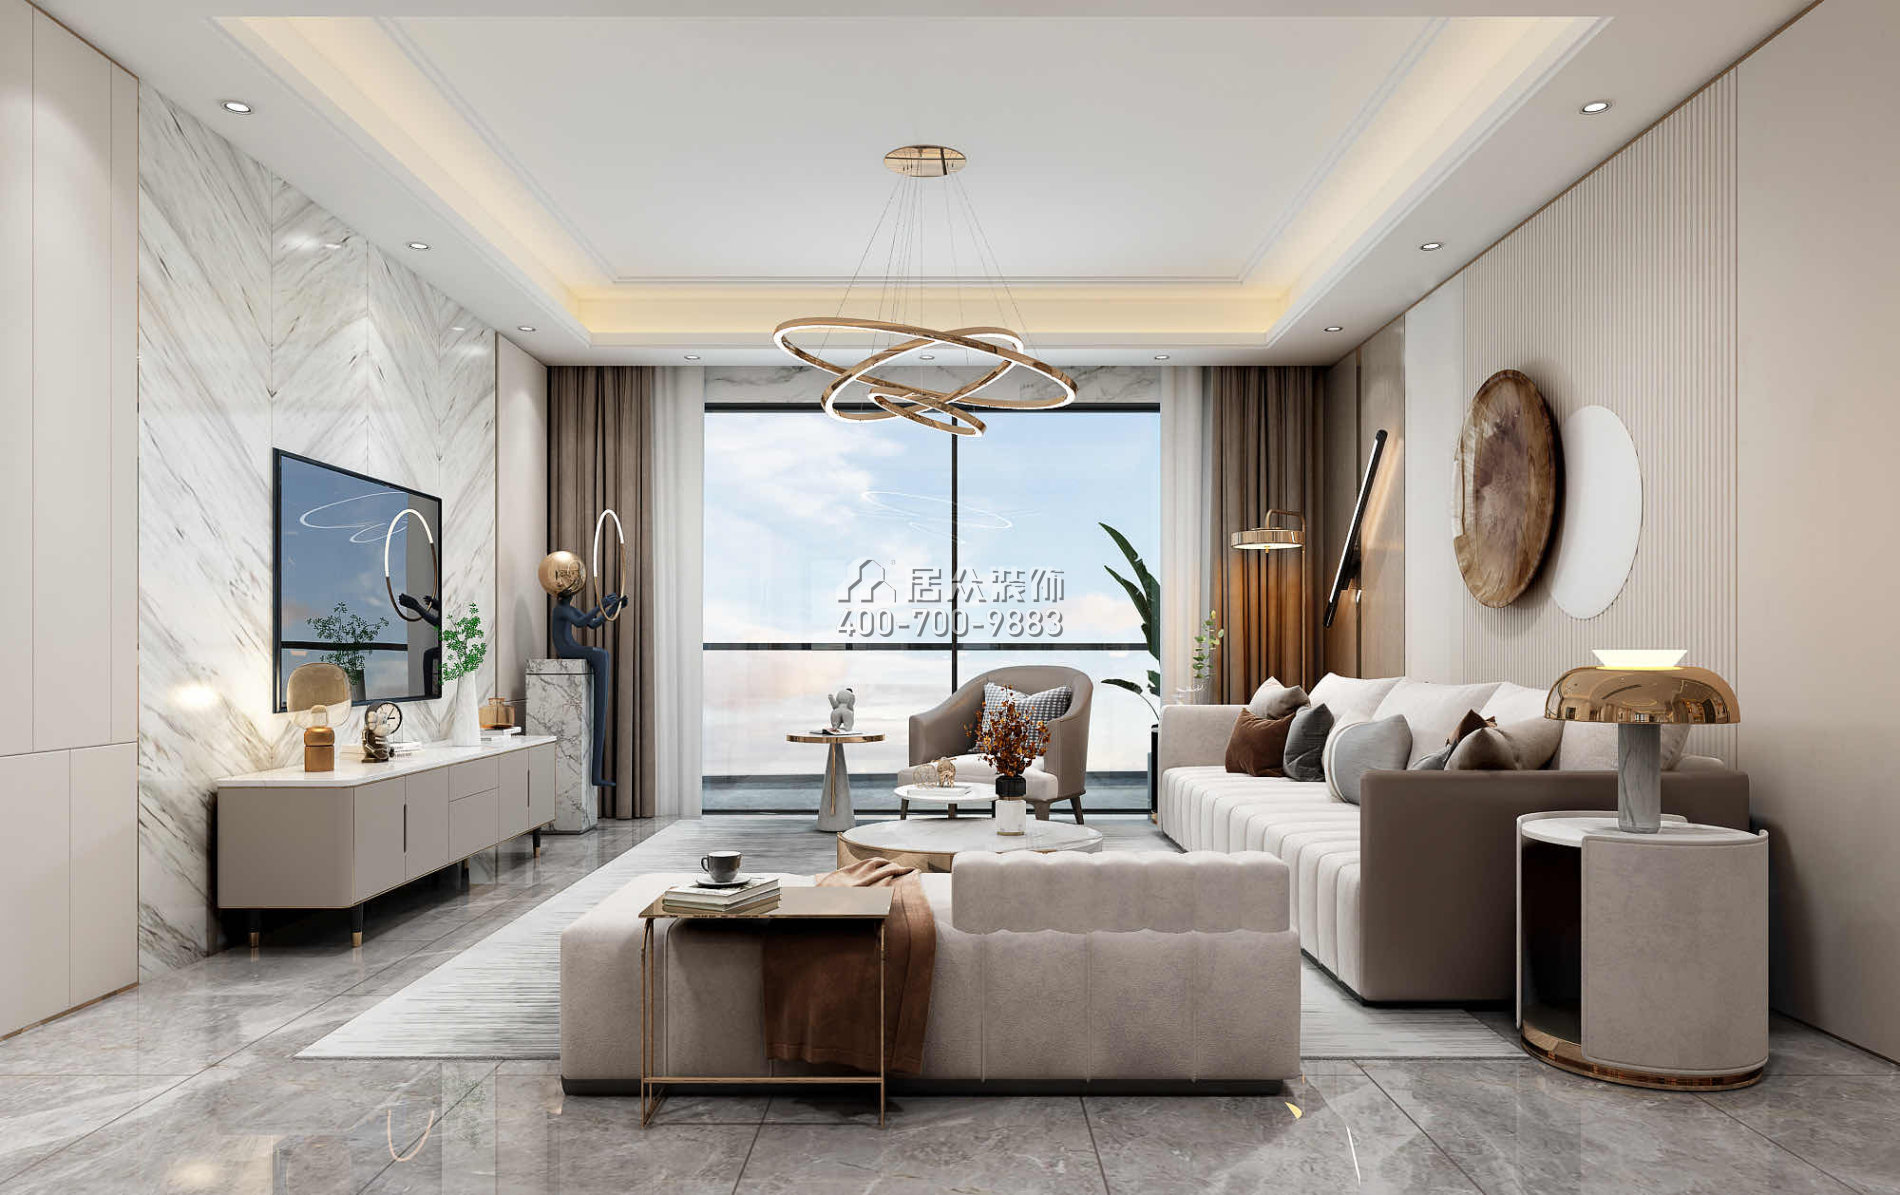 世纪新城230平方米现代简约风格平层户型客厅装修效果图